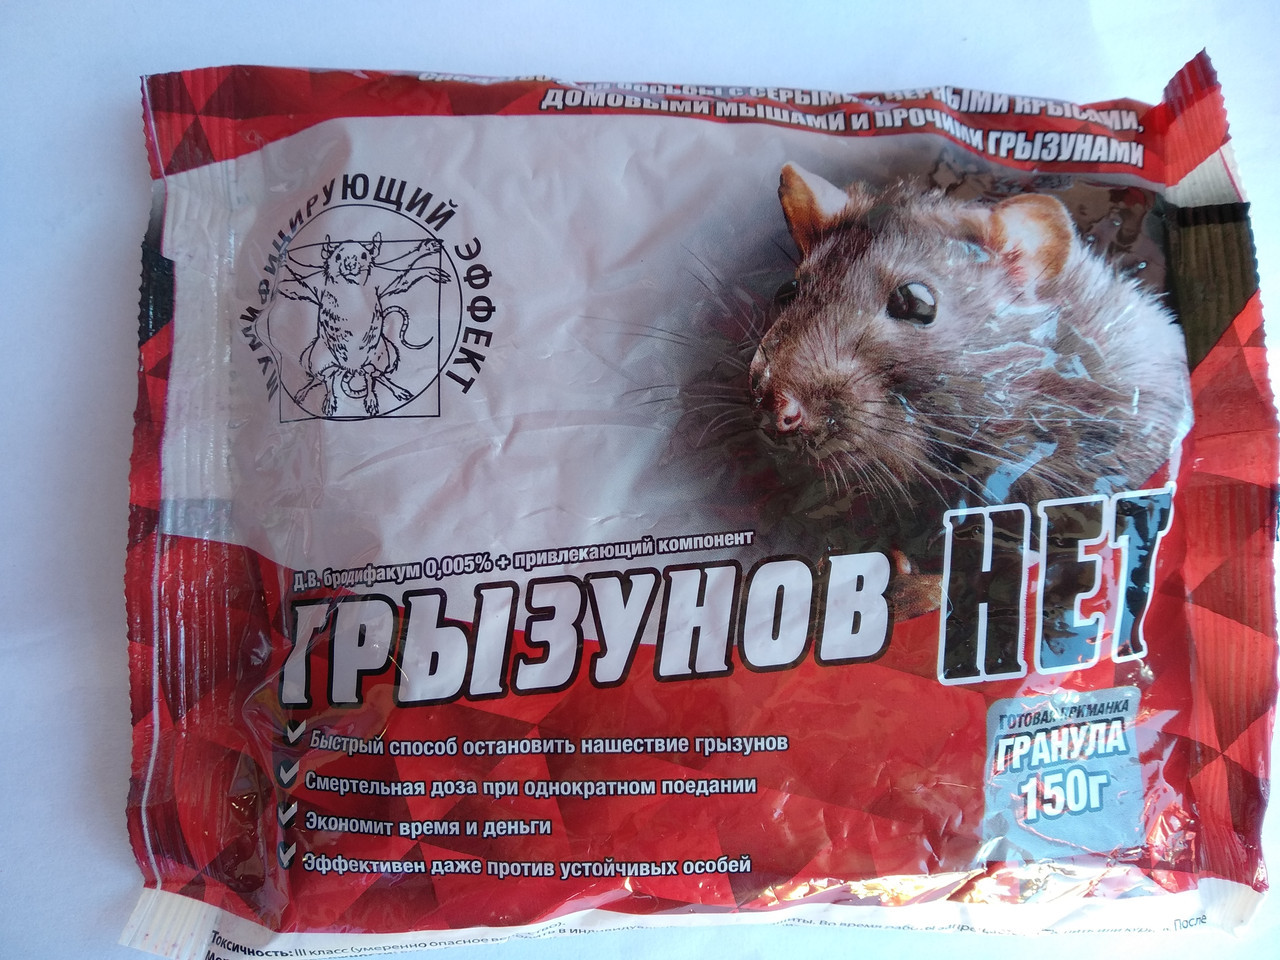 Мумифицирующая отрава для крыс и мышей: как работает это средство и отзывы о его применении